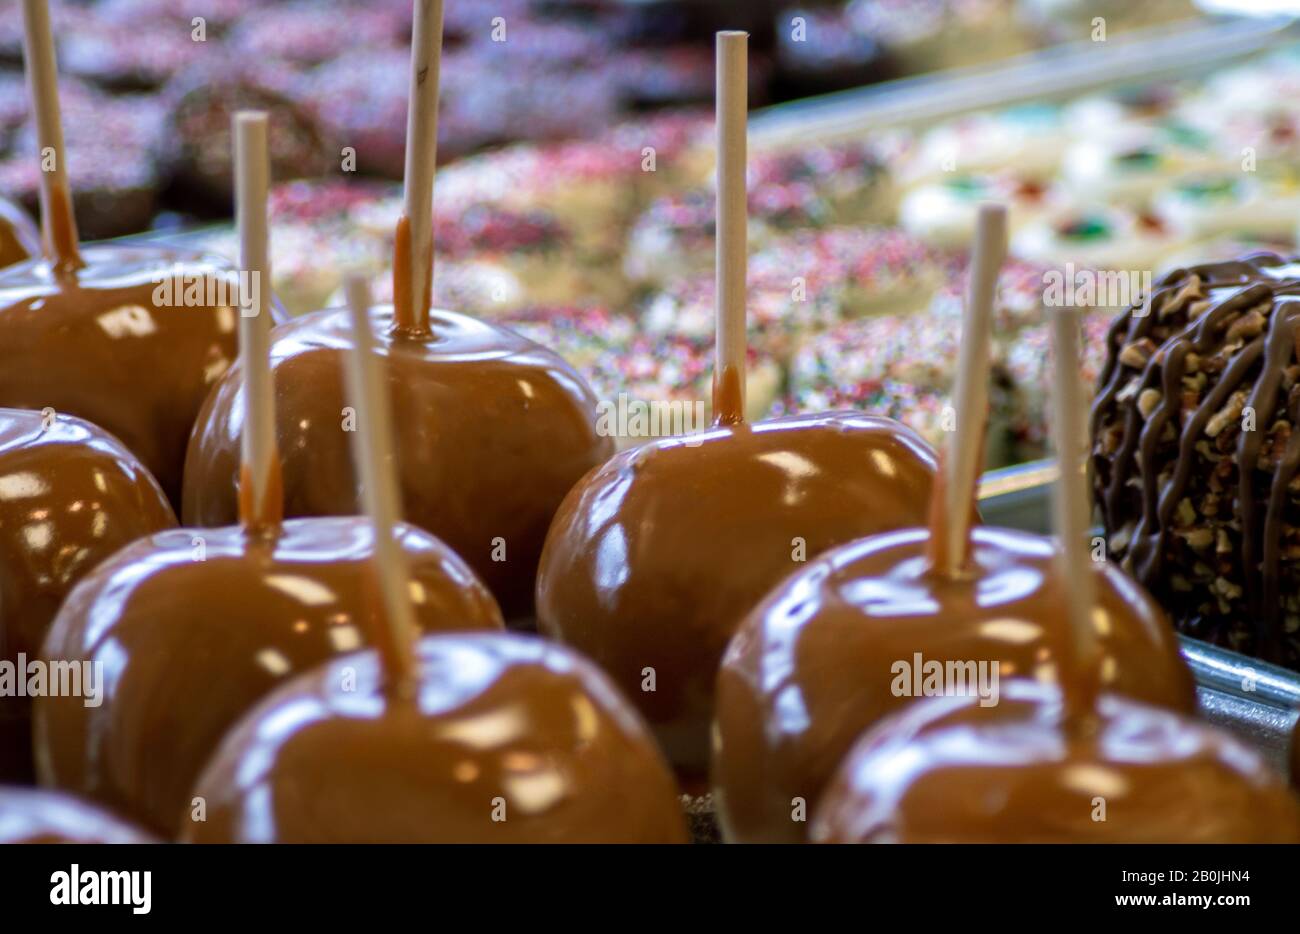 Le mele al caramello e i vassoi di dolcetti sono esposti in un negozio di caramelle Foto Stock